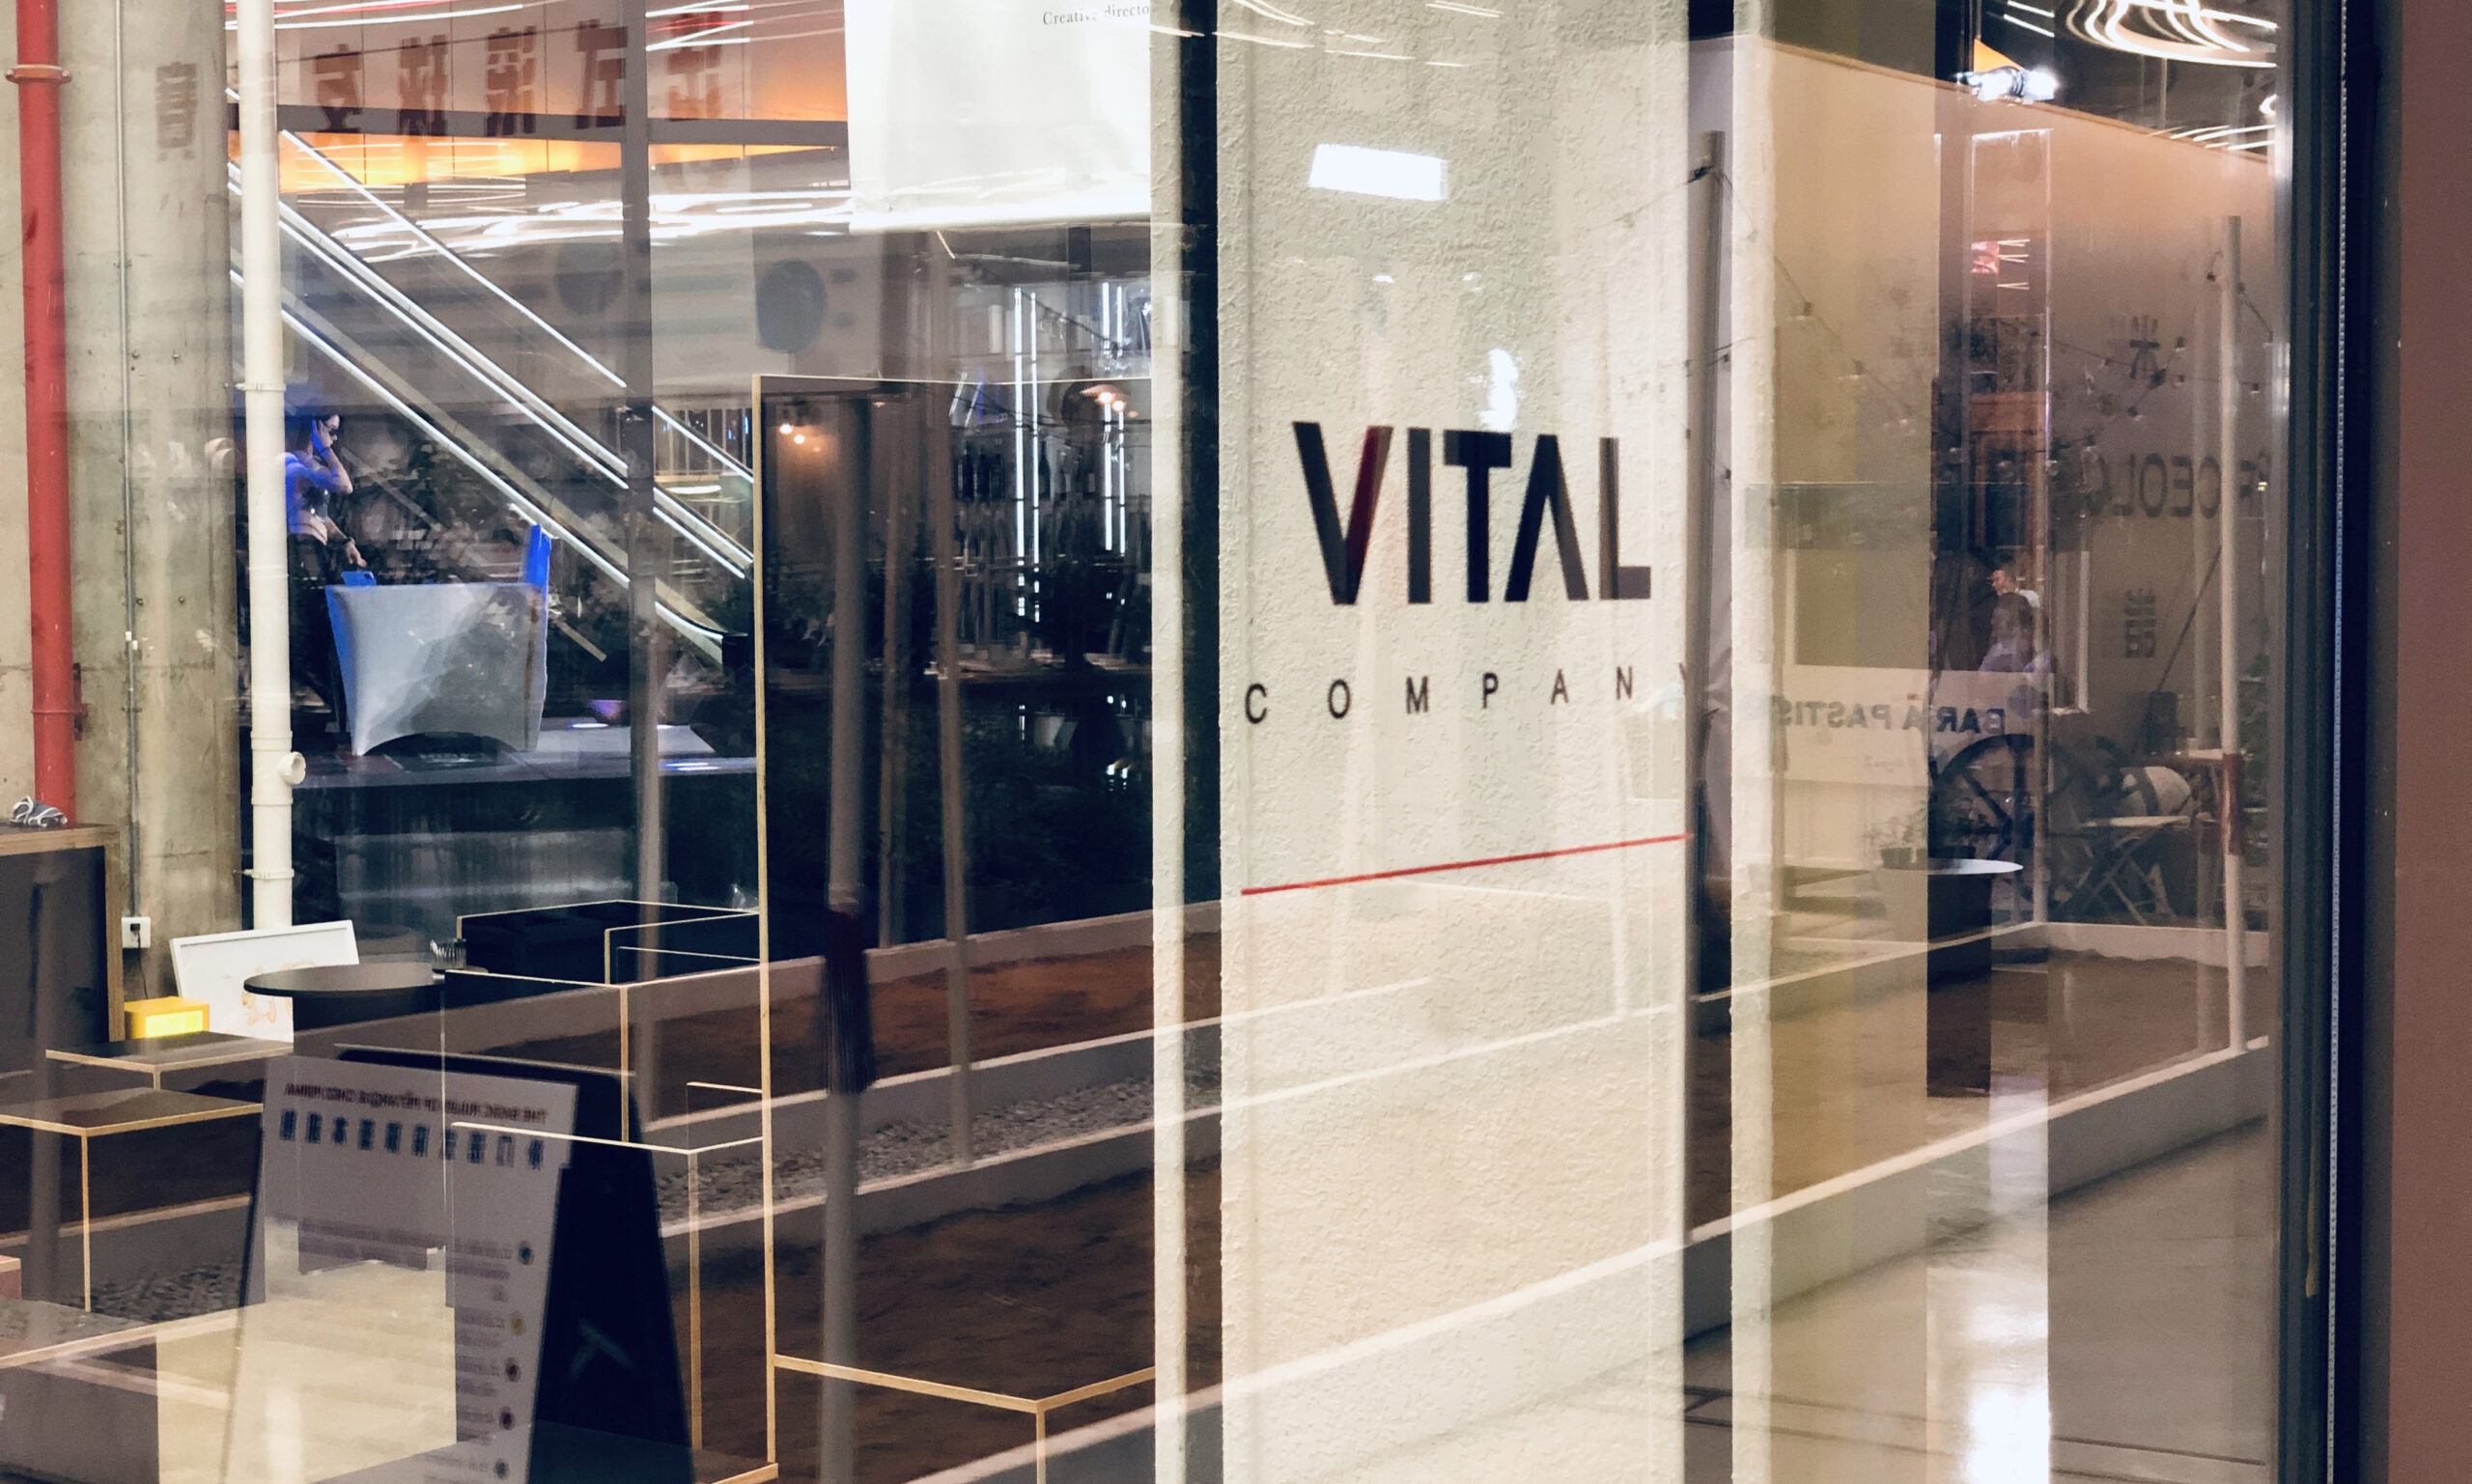 概念咖啡店 VITAL Company 将在广州番禺开设新店